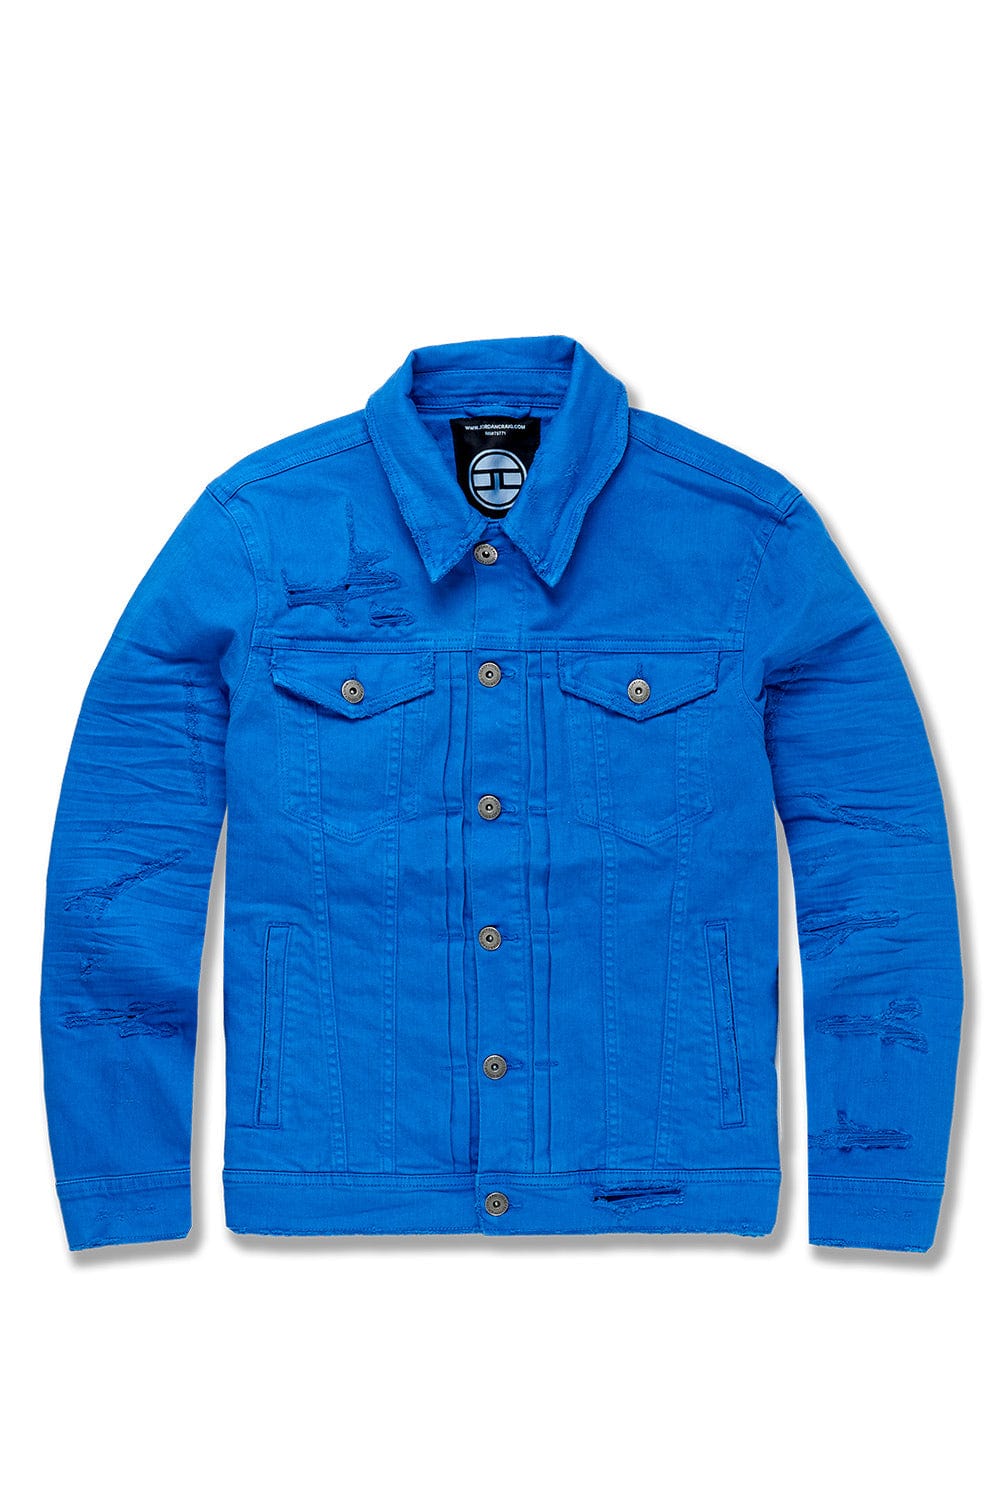 Jordan Craig Tribeca Twill Trucker Jacket (Exclusive Colors) Royal / S